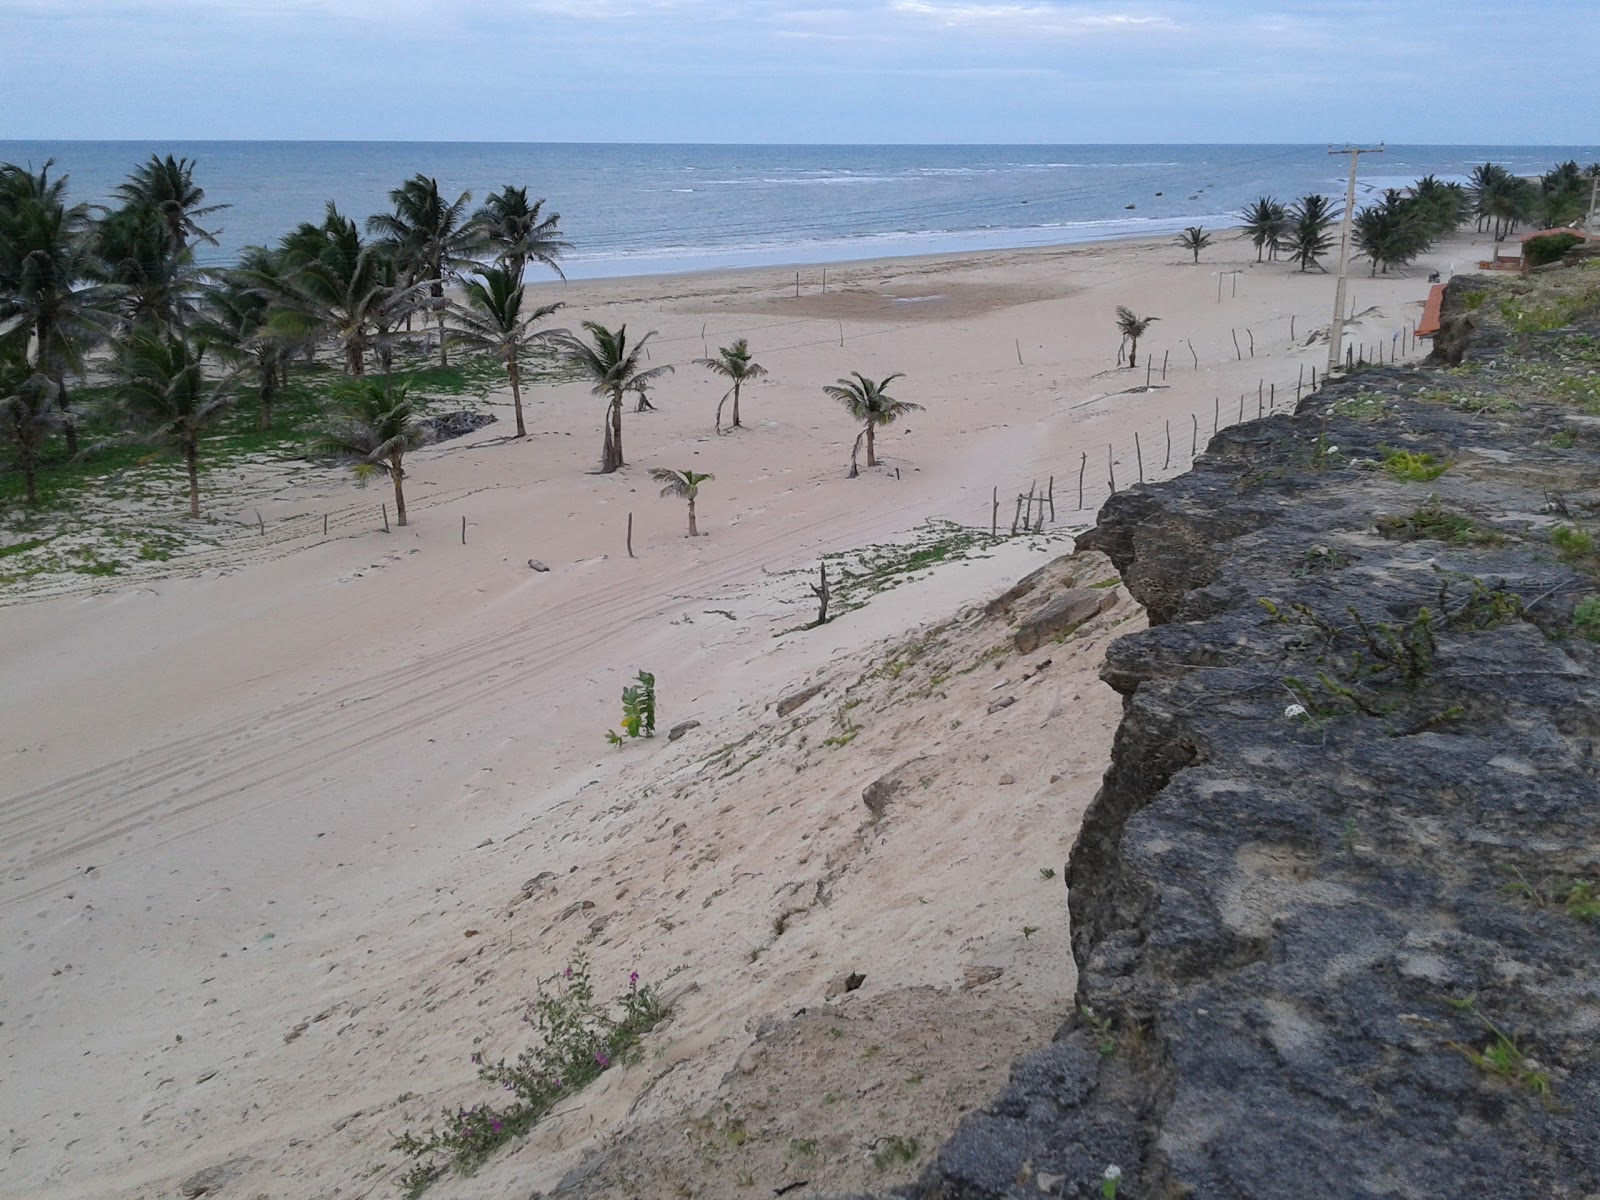 Foto af Praia de Caetanos - populært sted blandt afslapningskendere